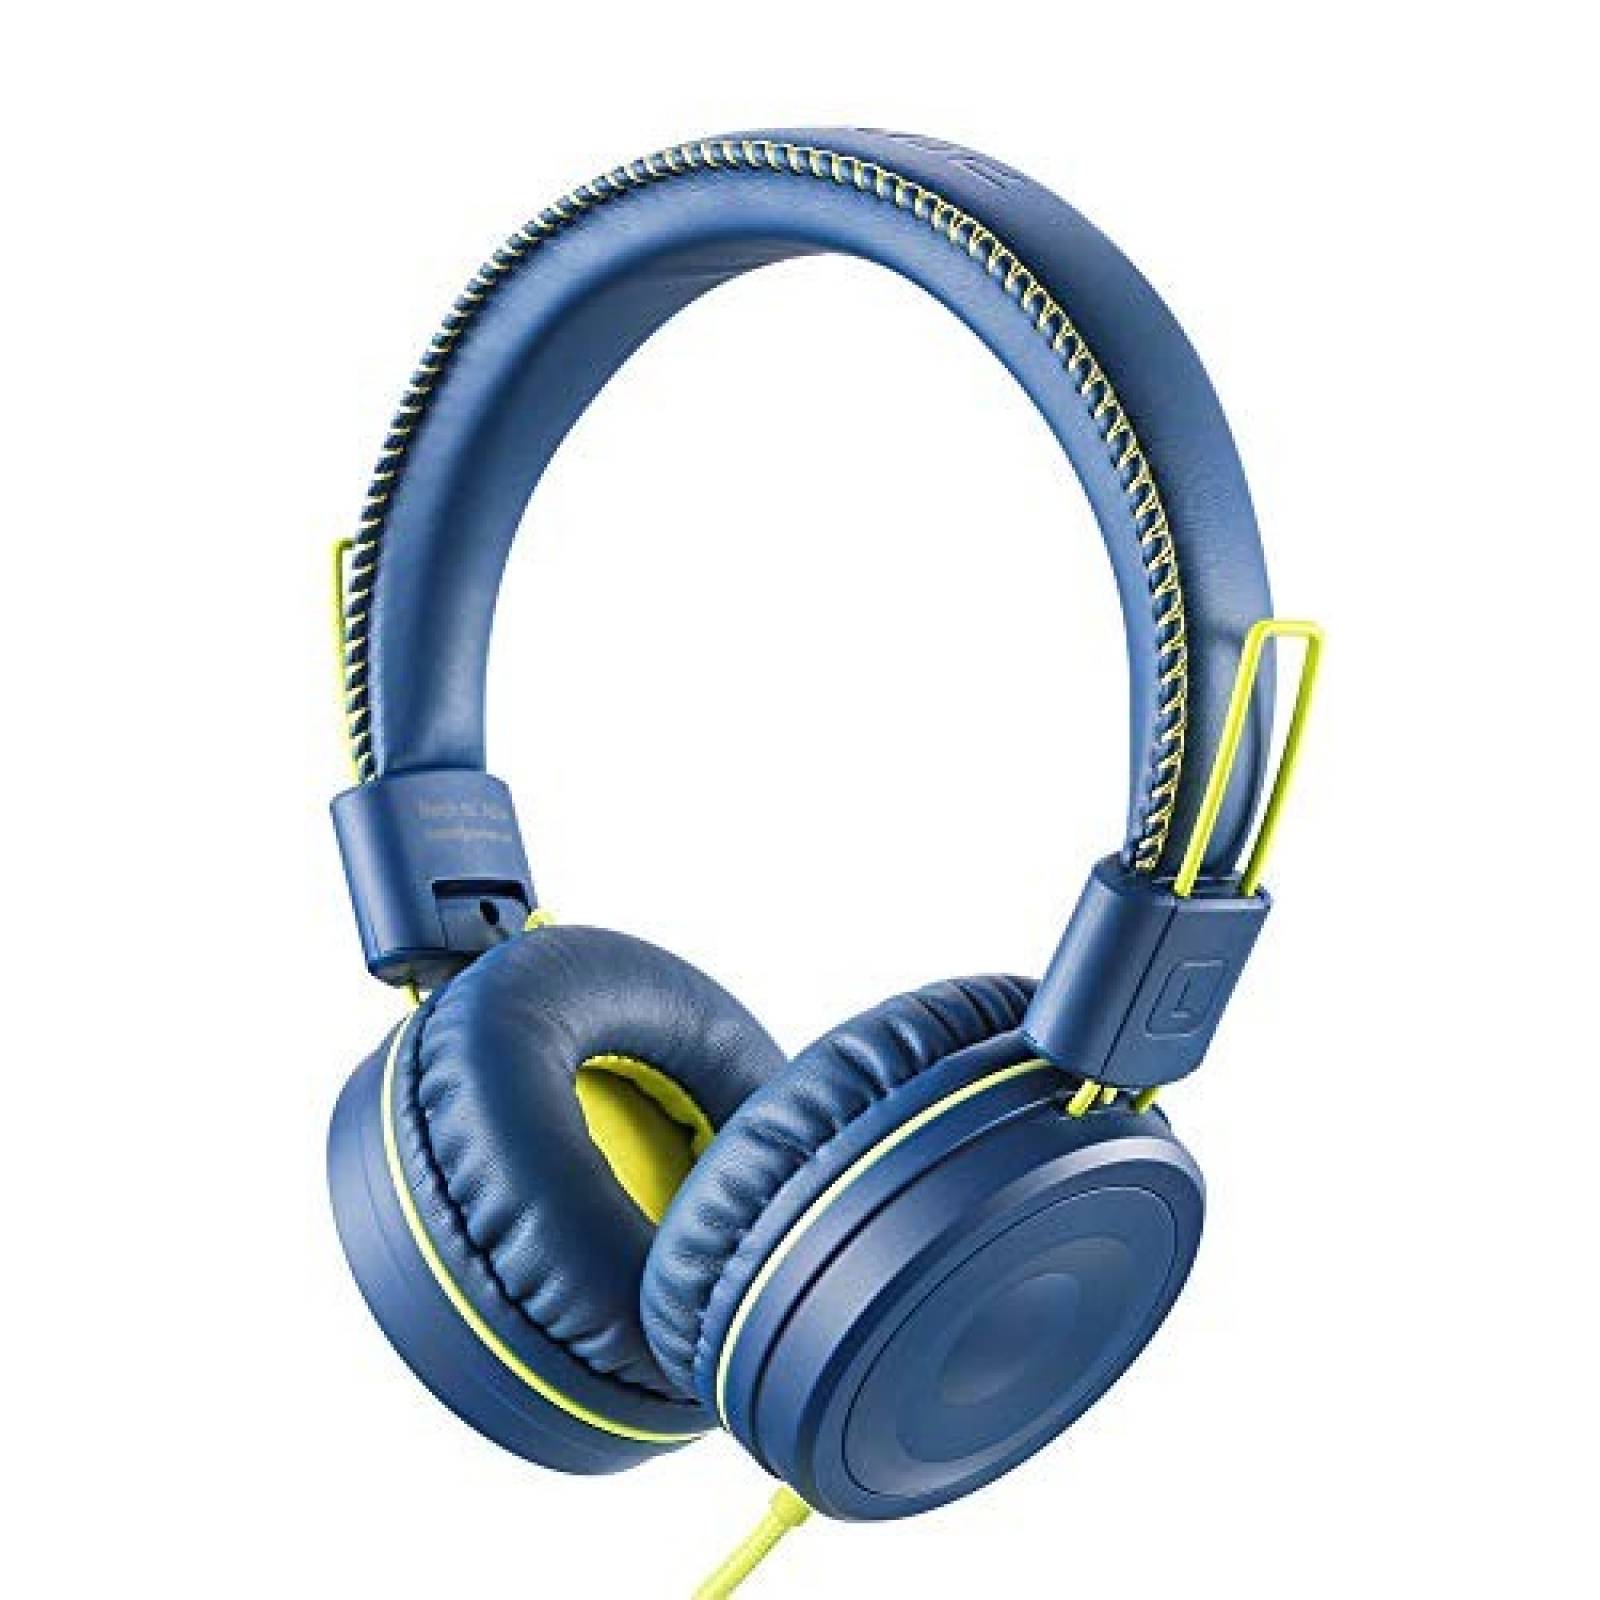 Audífonos Over-Ear POWMEE infantiles 3.5mm jack -Azul